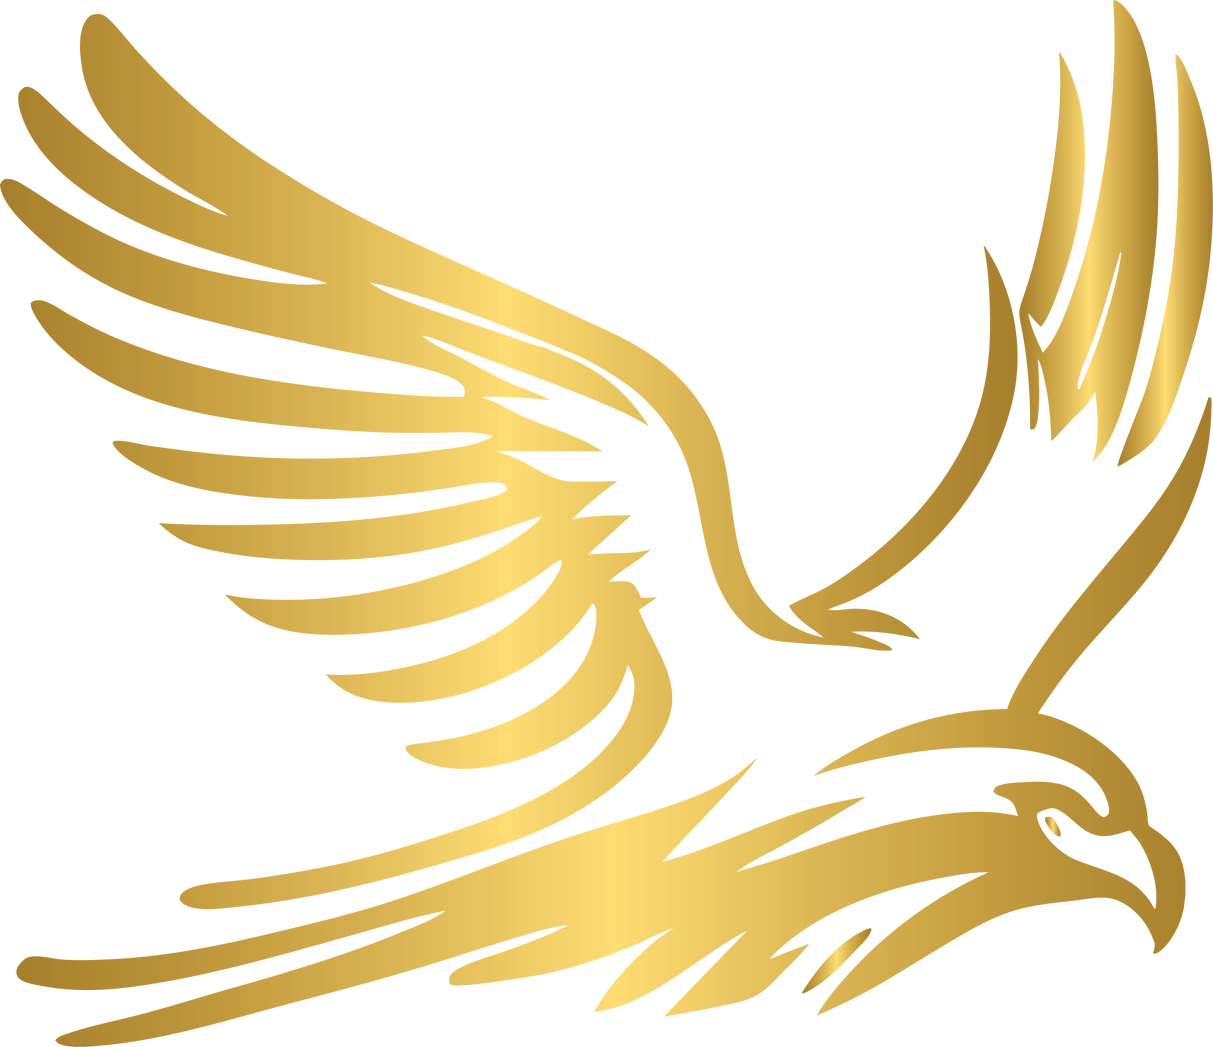 Golden eagle